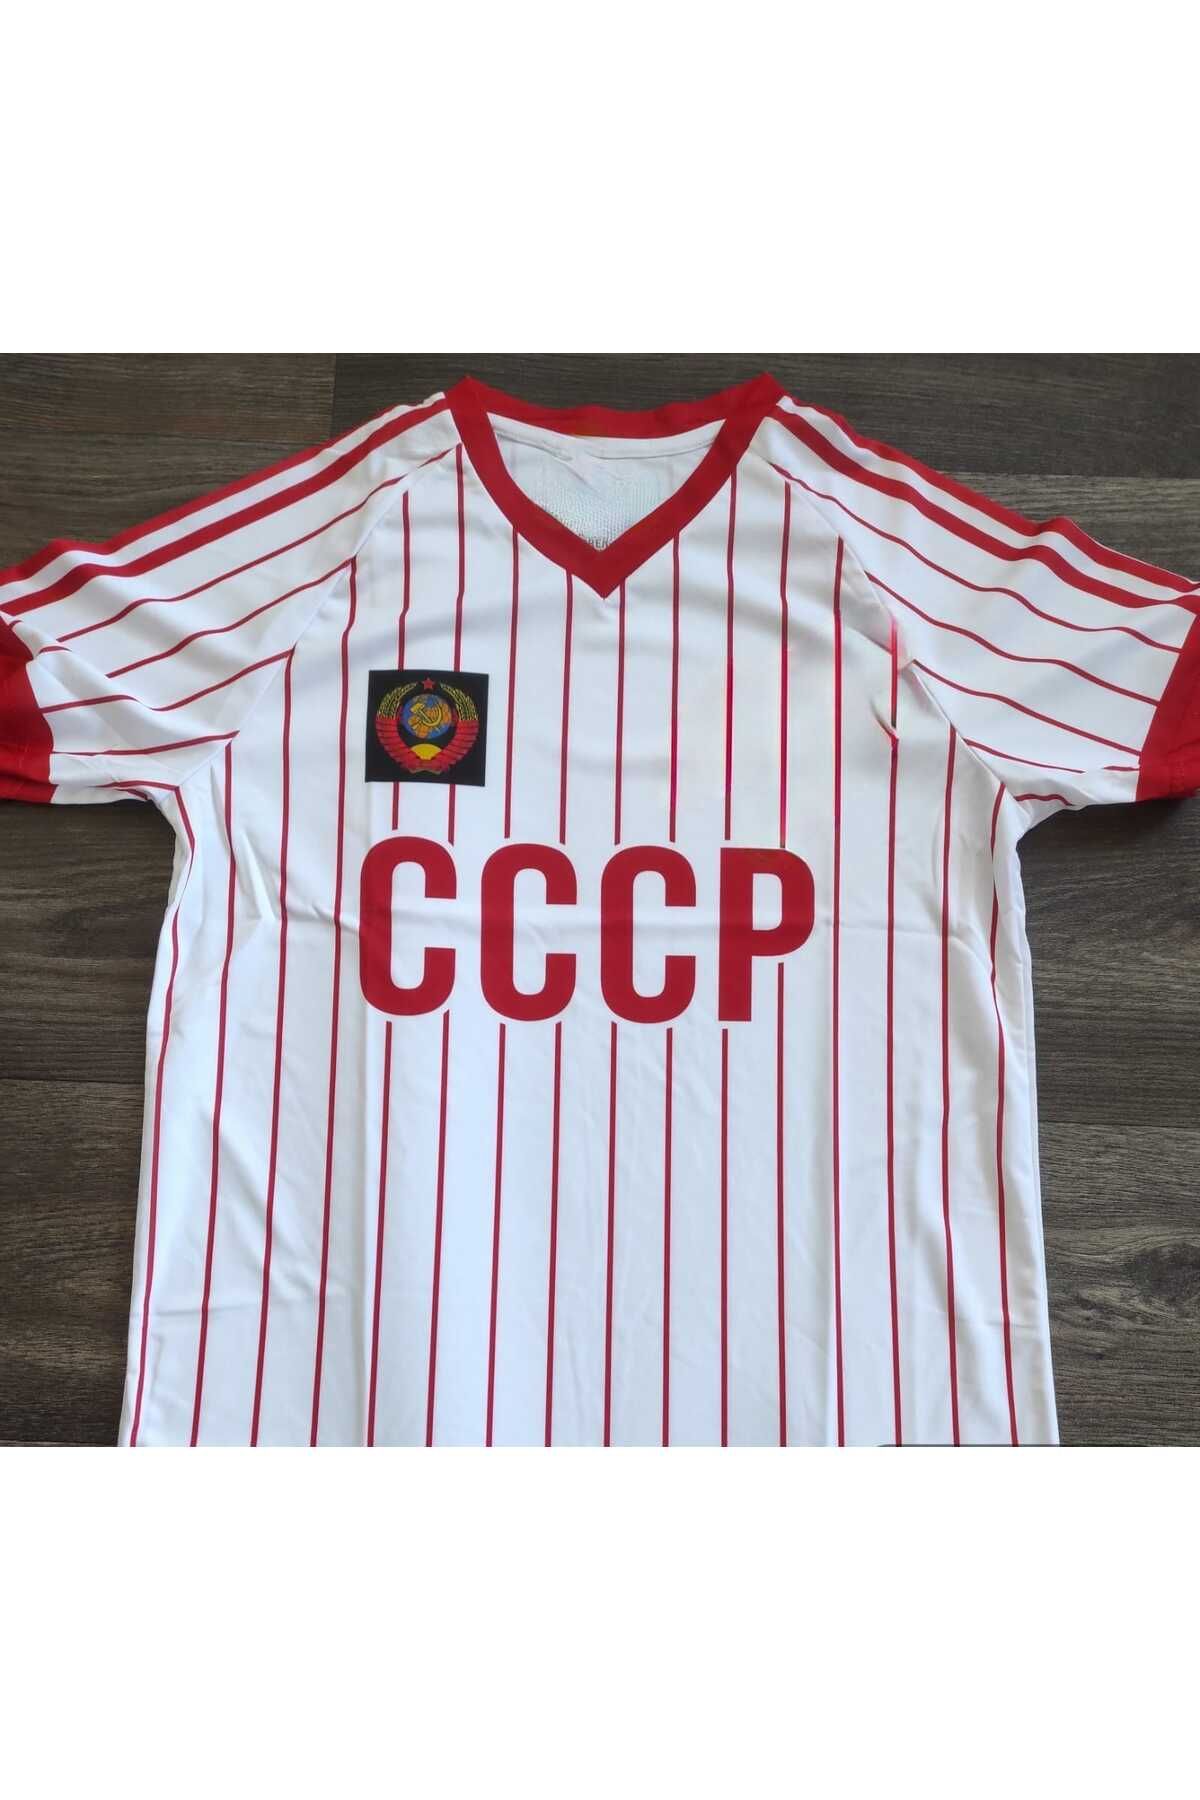 Lion Spor Cccp Sovyet Özel Tasarım Forma Fiyatı, Yorumları - Trendyol